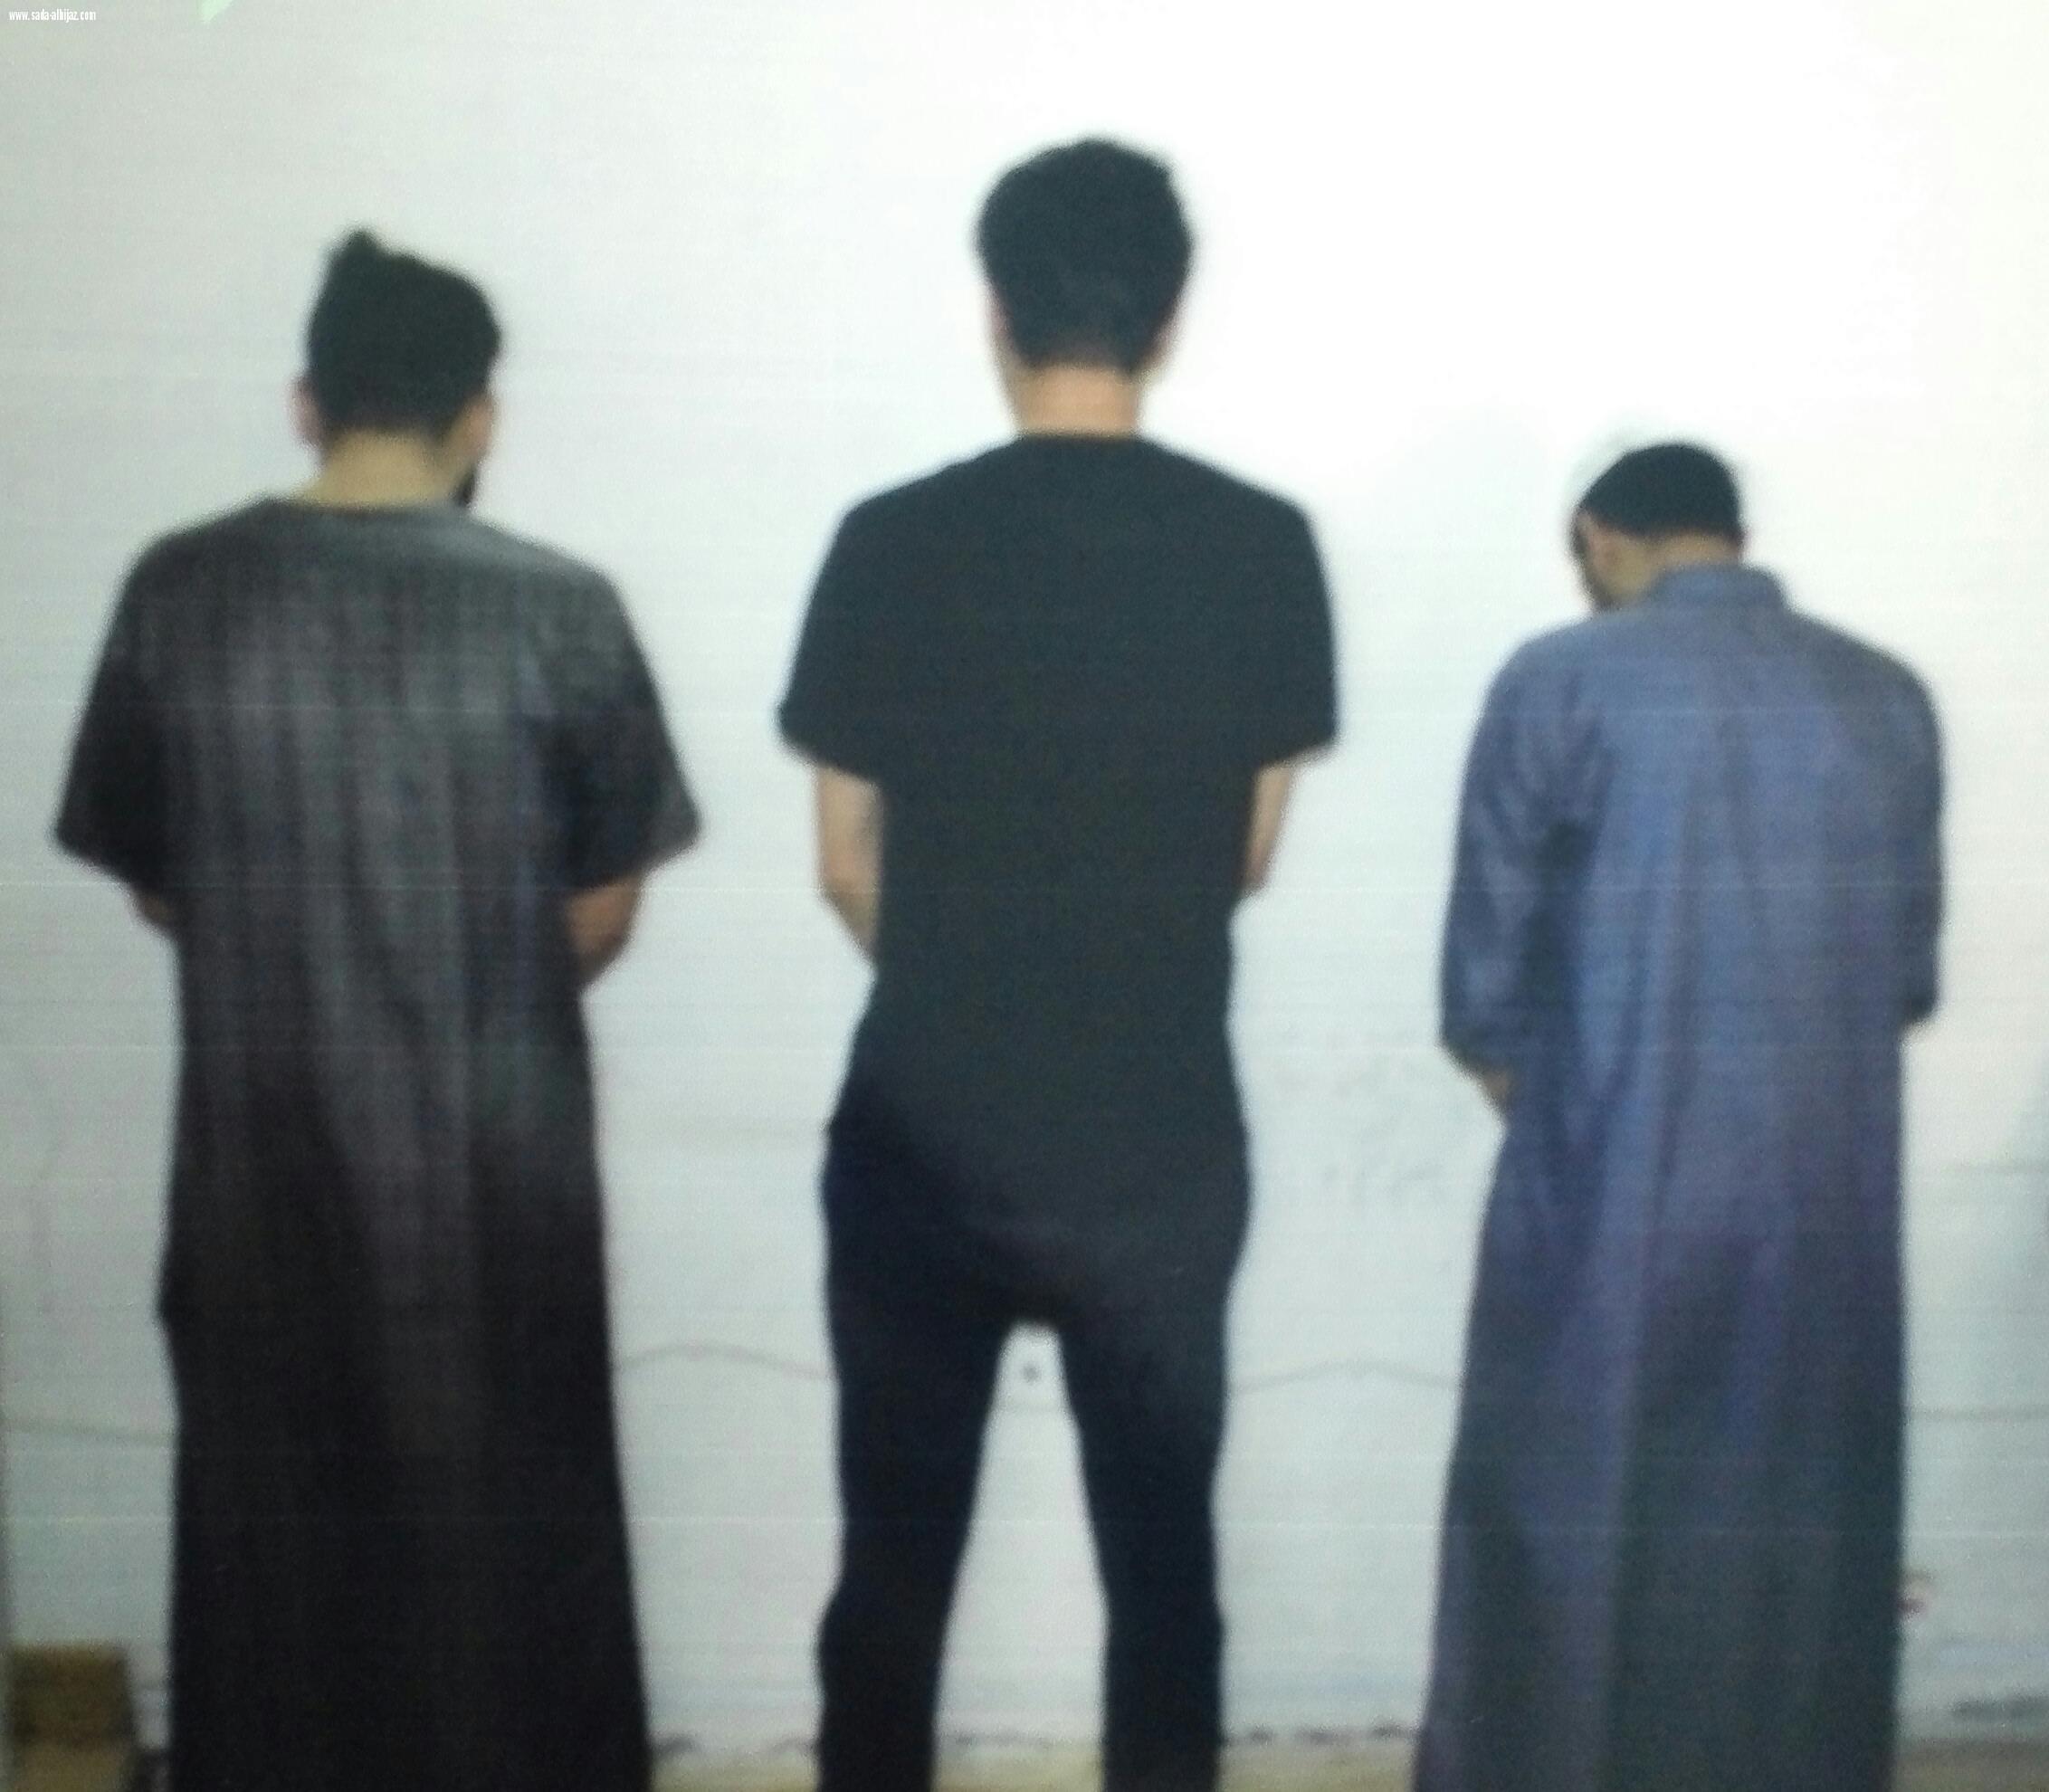 شرطة منطقة المدينة تقبض على 3 متورطين في الاعتداء على مقيم عربي